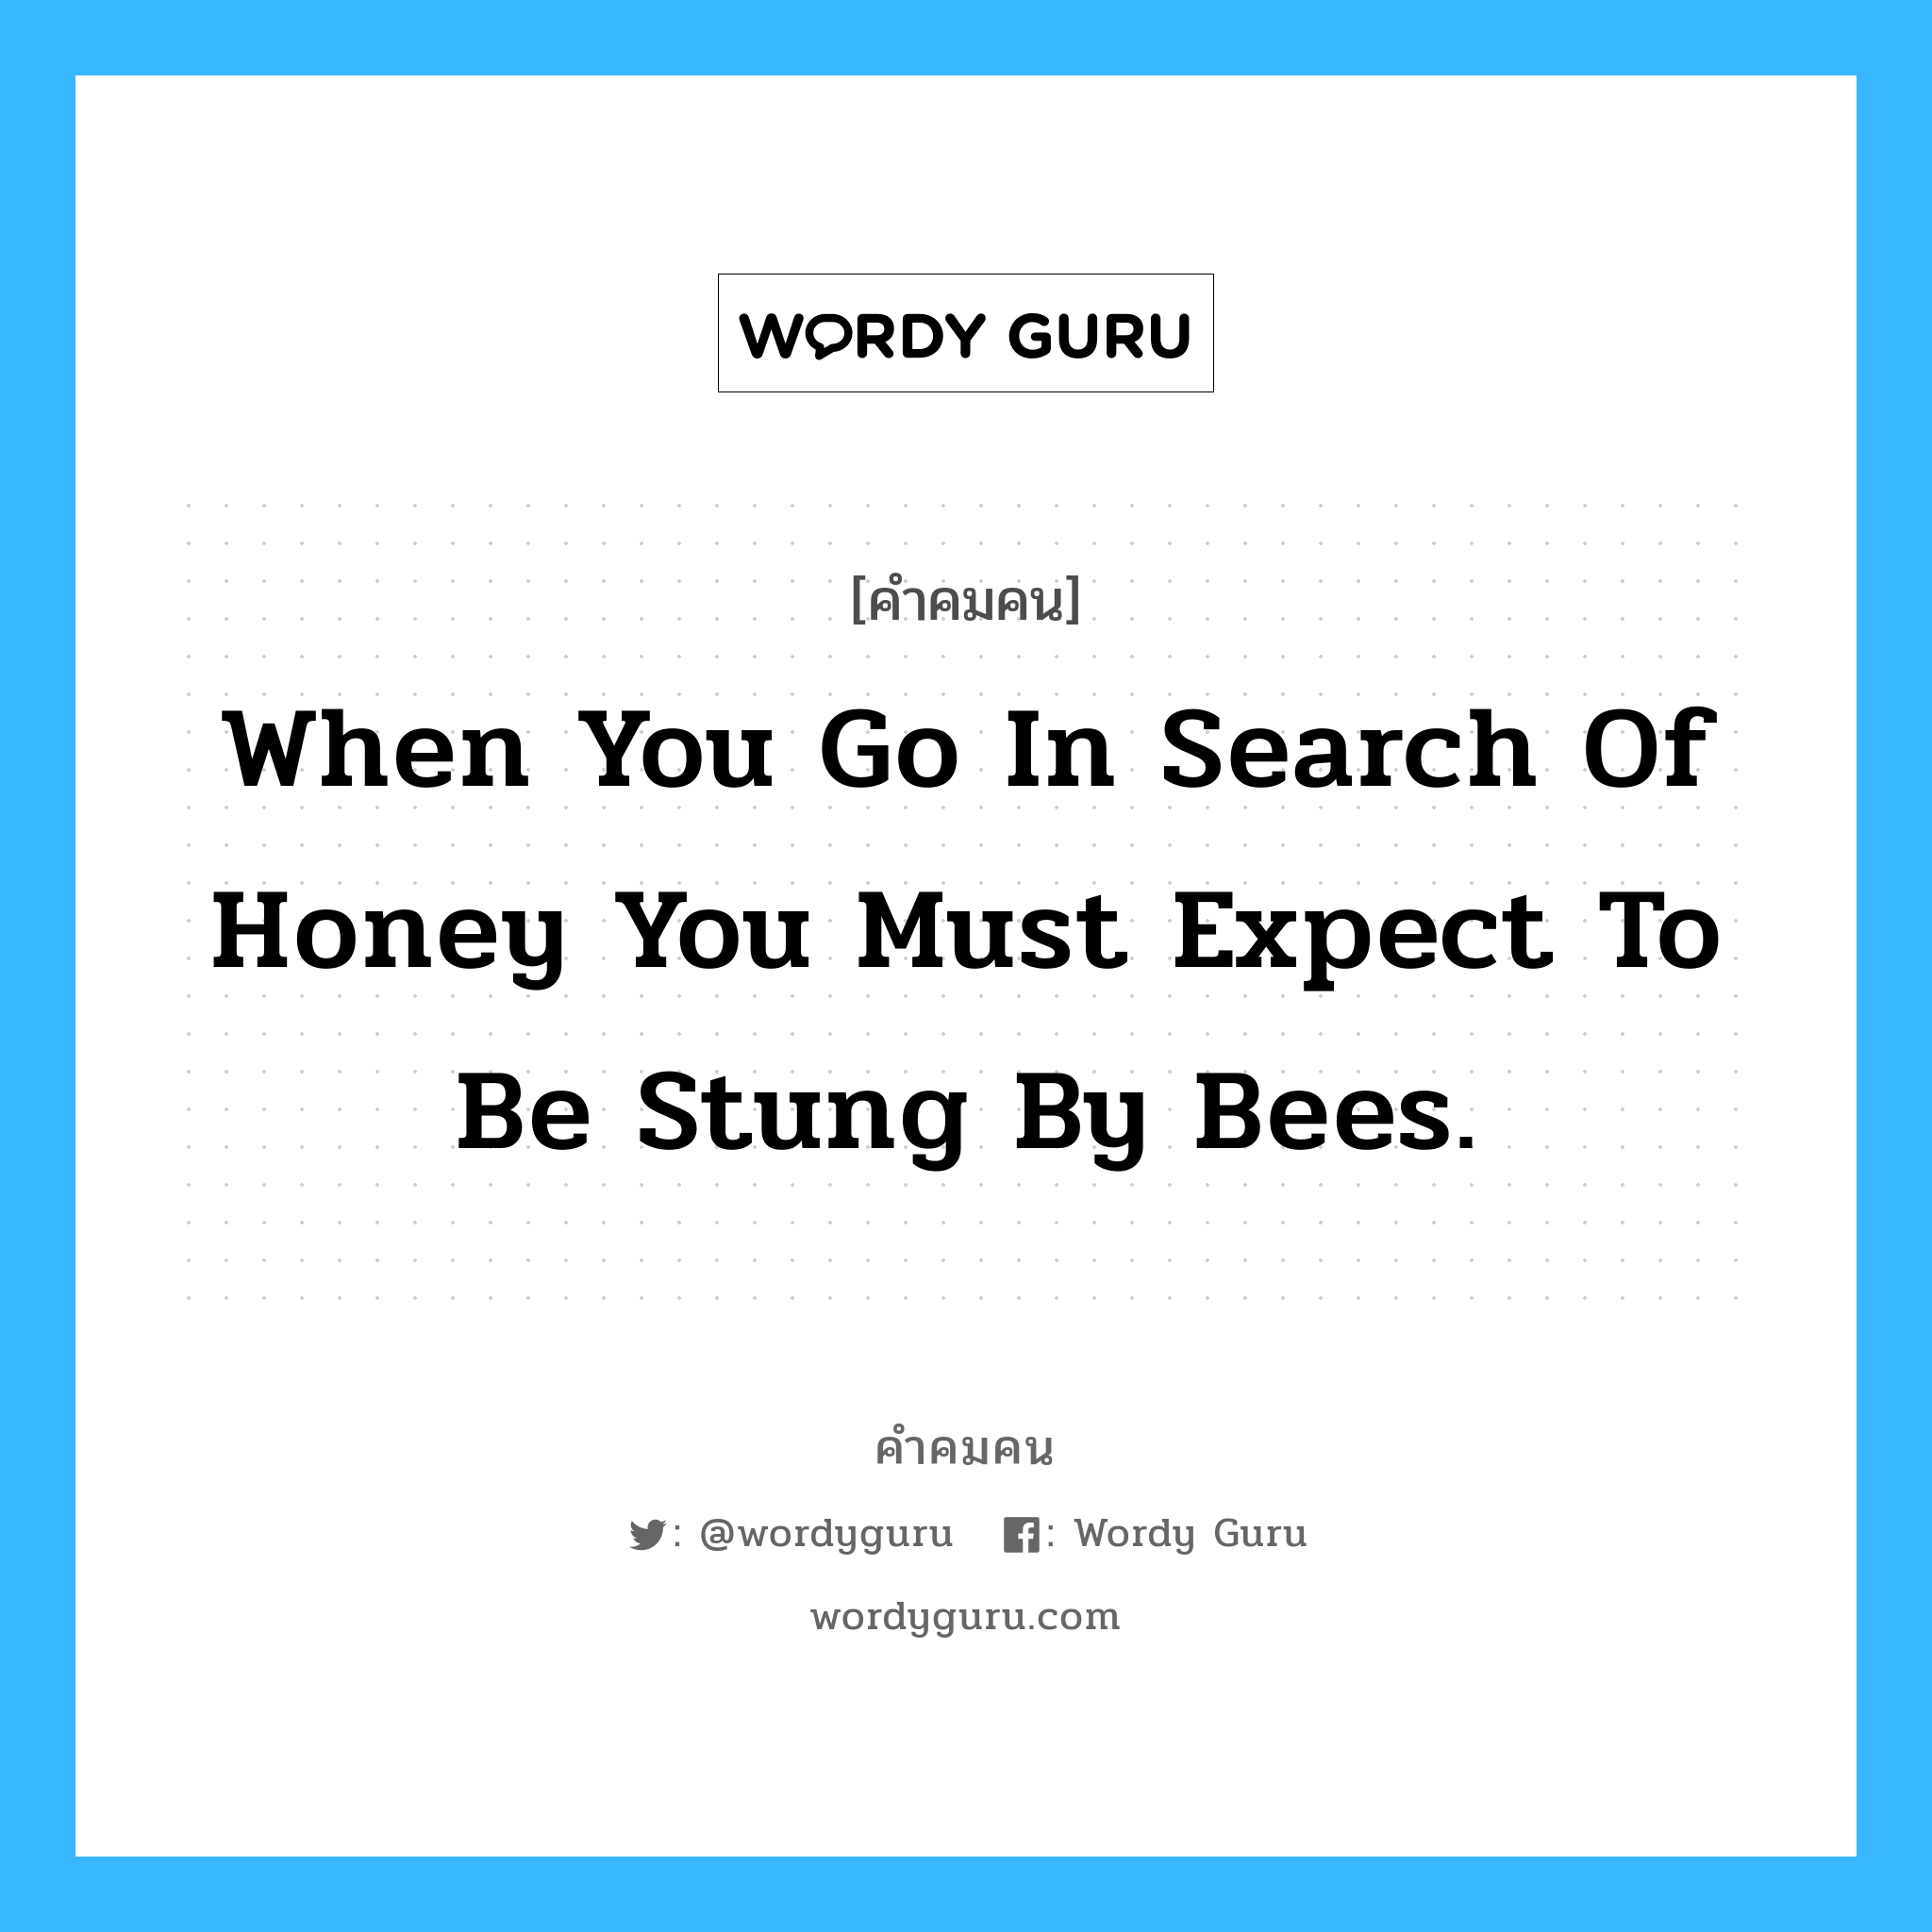 When you go in search of honey you must expect to be stung by bees. อยู่ในกลุ่มประเภท Kenneth Kaunda, คำคมคน When you go in search of honey you must expect to be stung by bees. เมื่อคุณต้องการน้ำผึ้ง คุณต้องรู้ว่า คุณจะถูกผึ้งต่อย Kenneth Kaunda หมวด Kenneth Kaunda